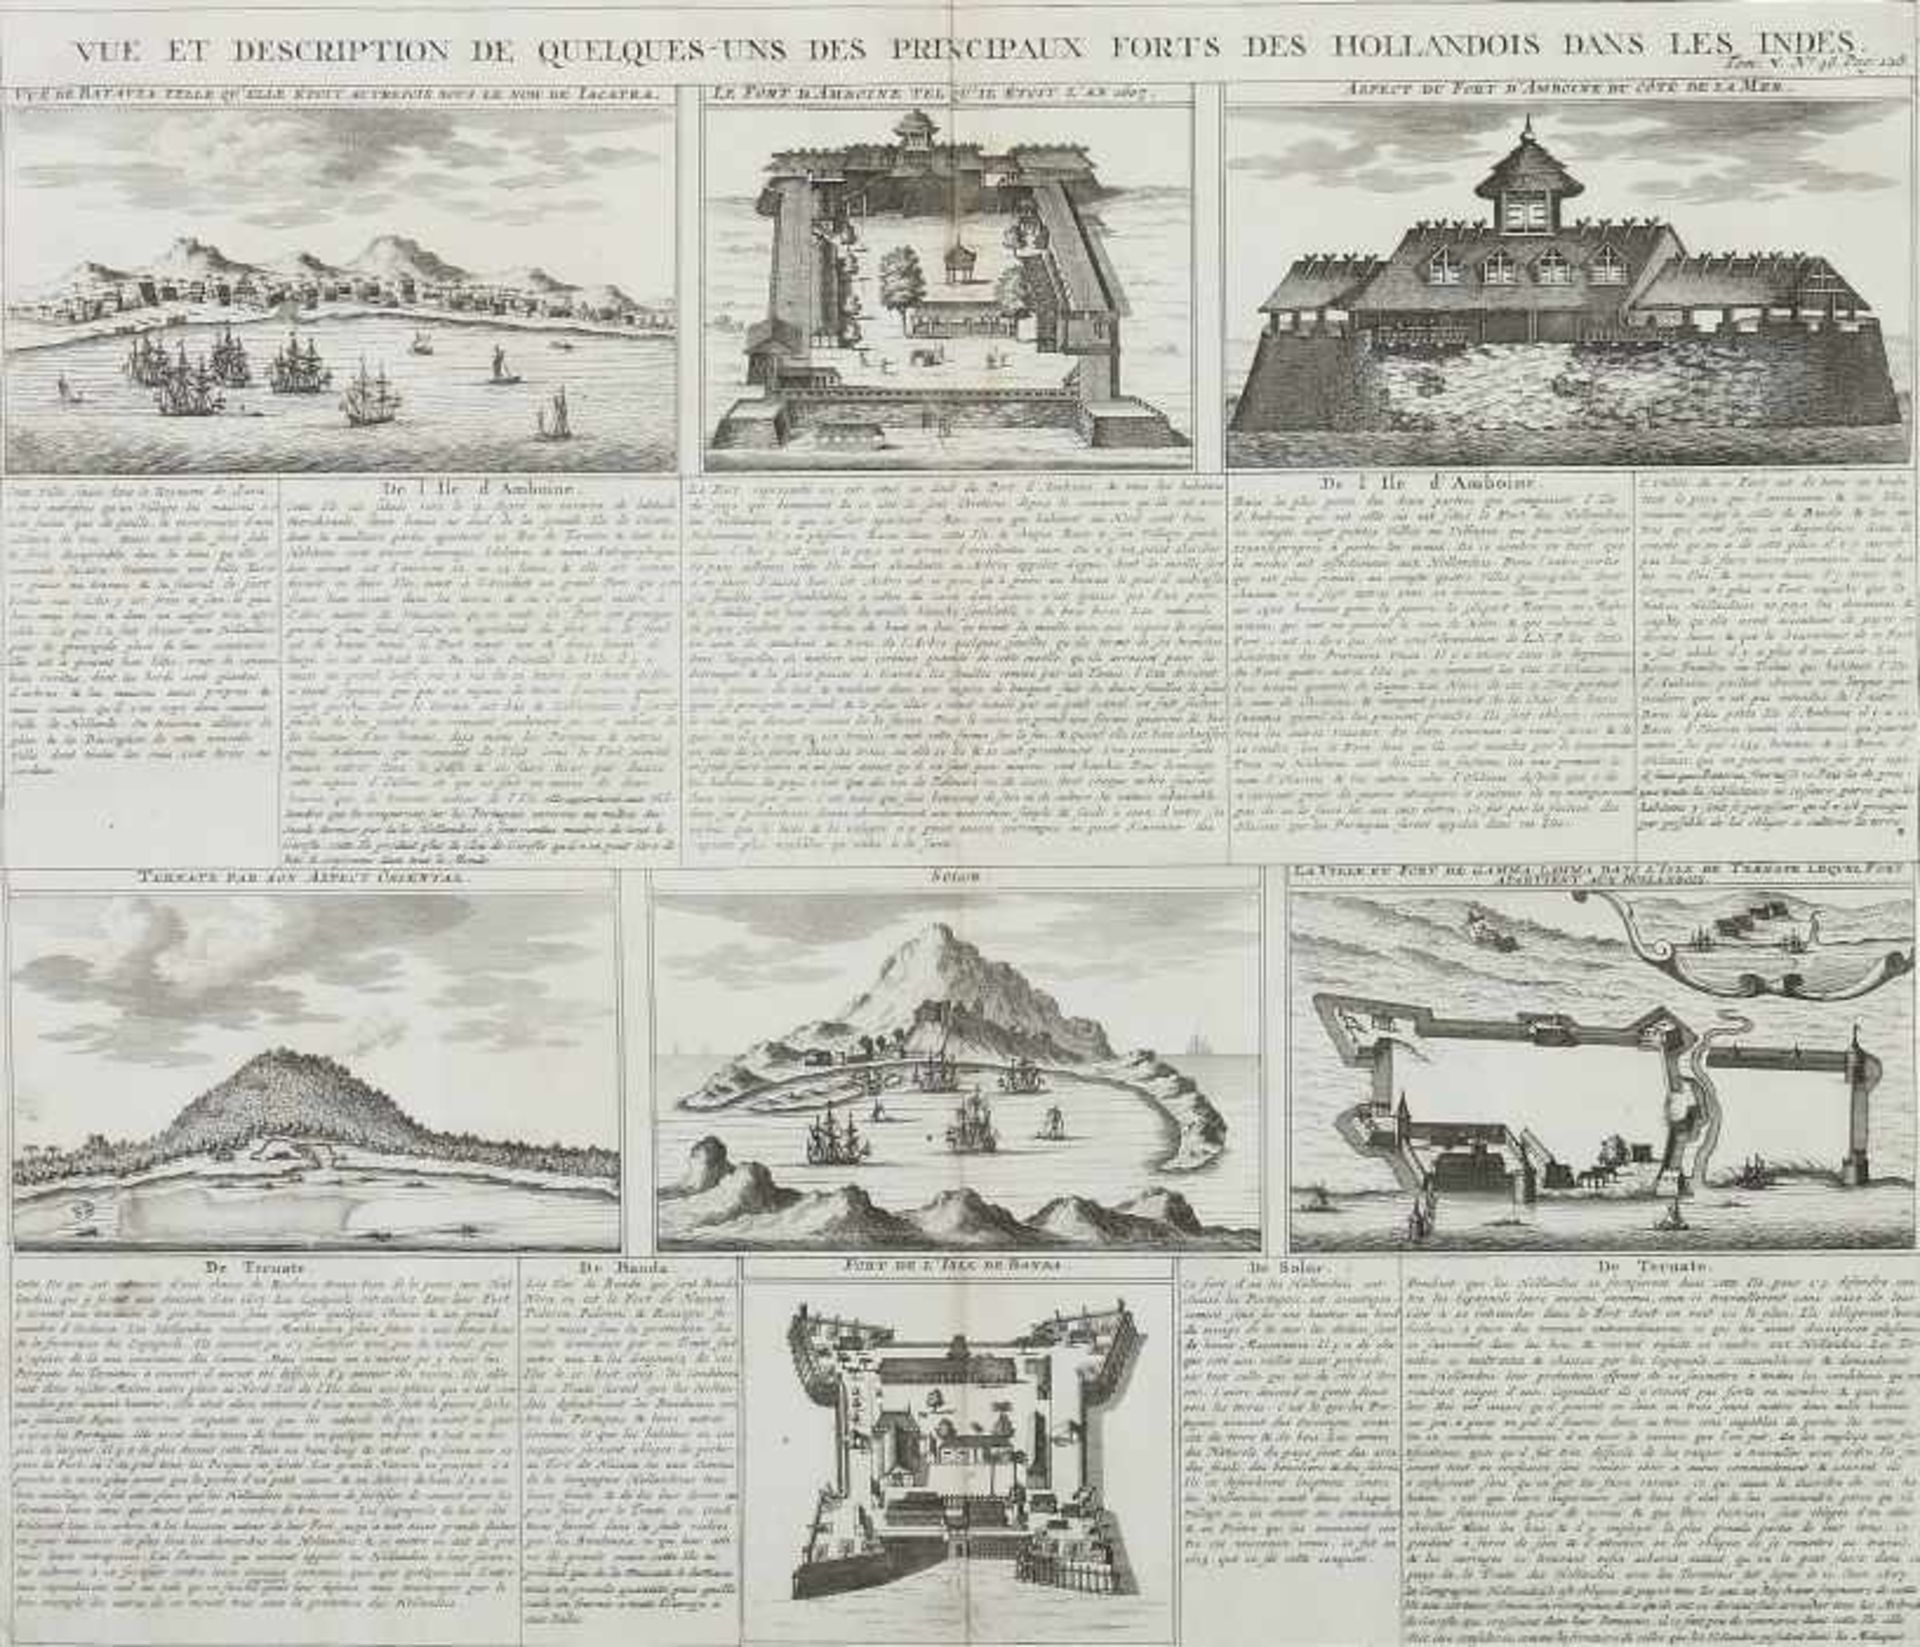 Chatelain, Henri 1684 - 1743. "Vue et Description de quelques-uns des principaux Forts des